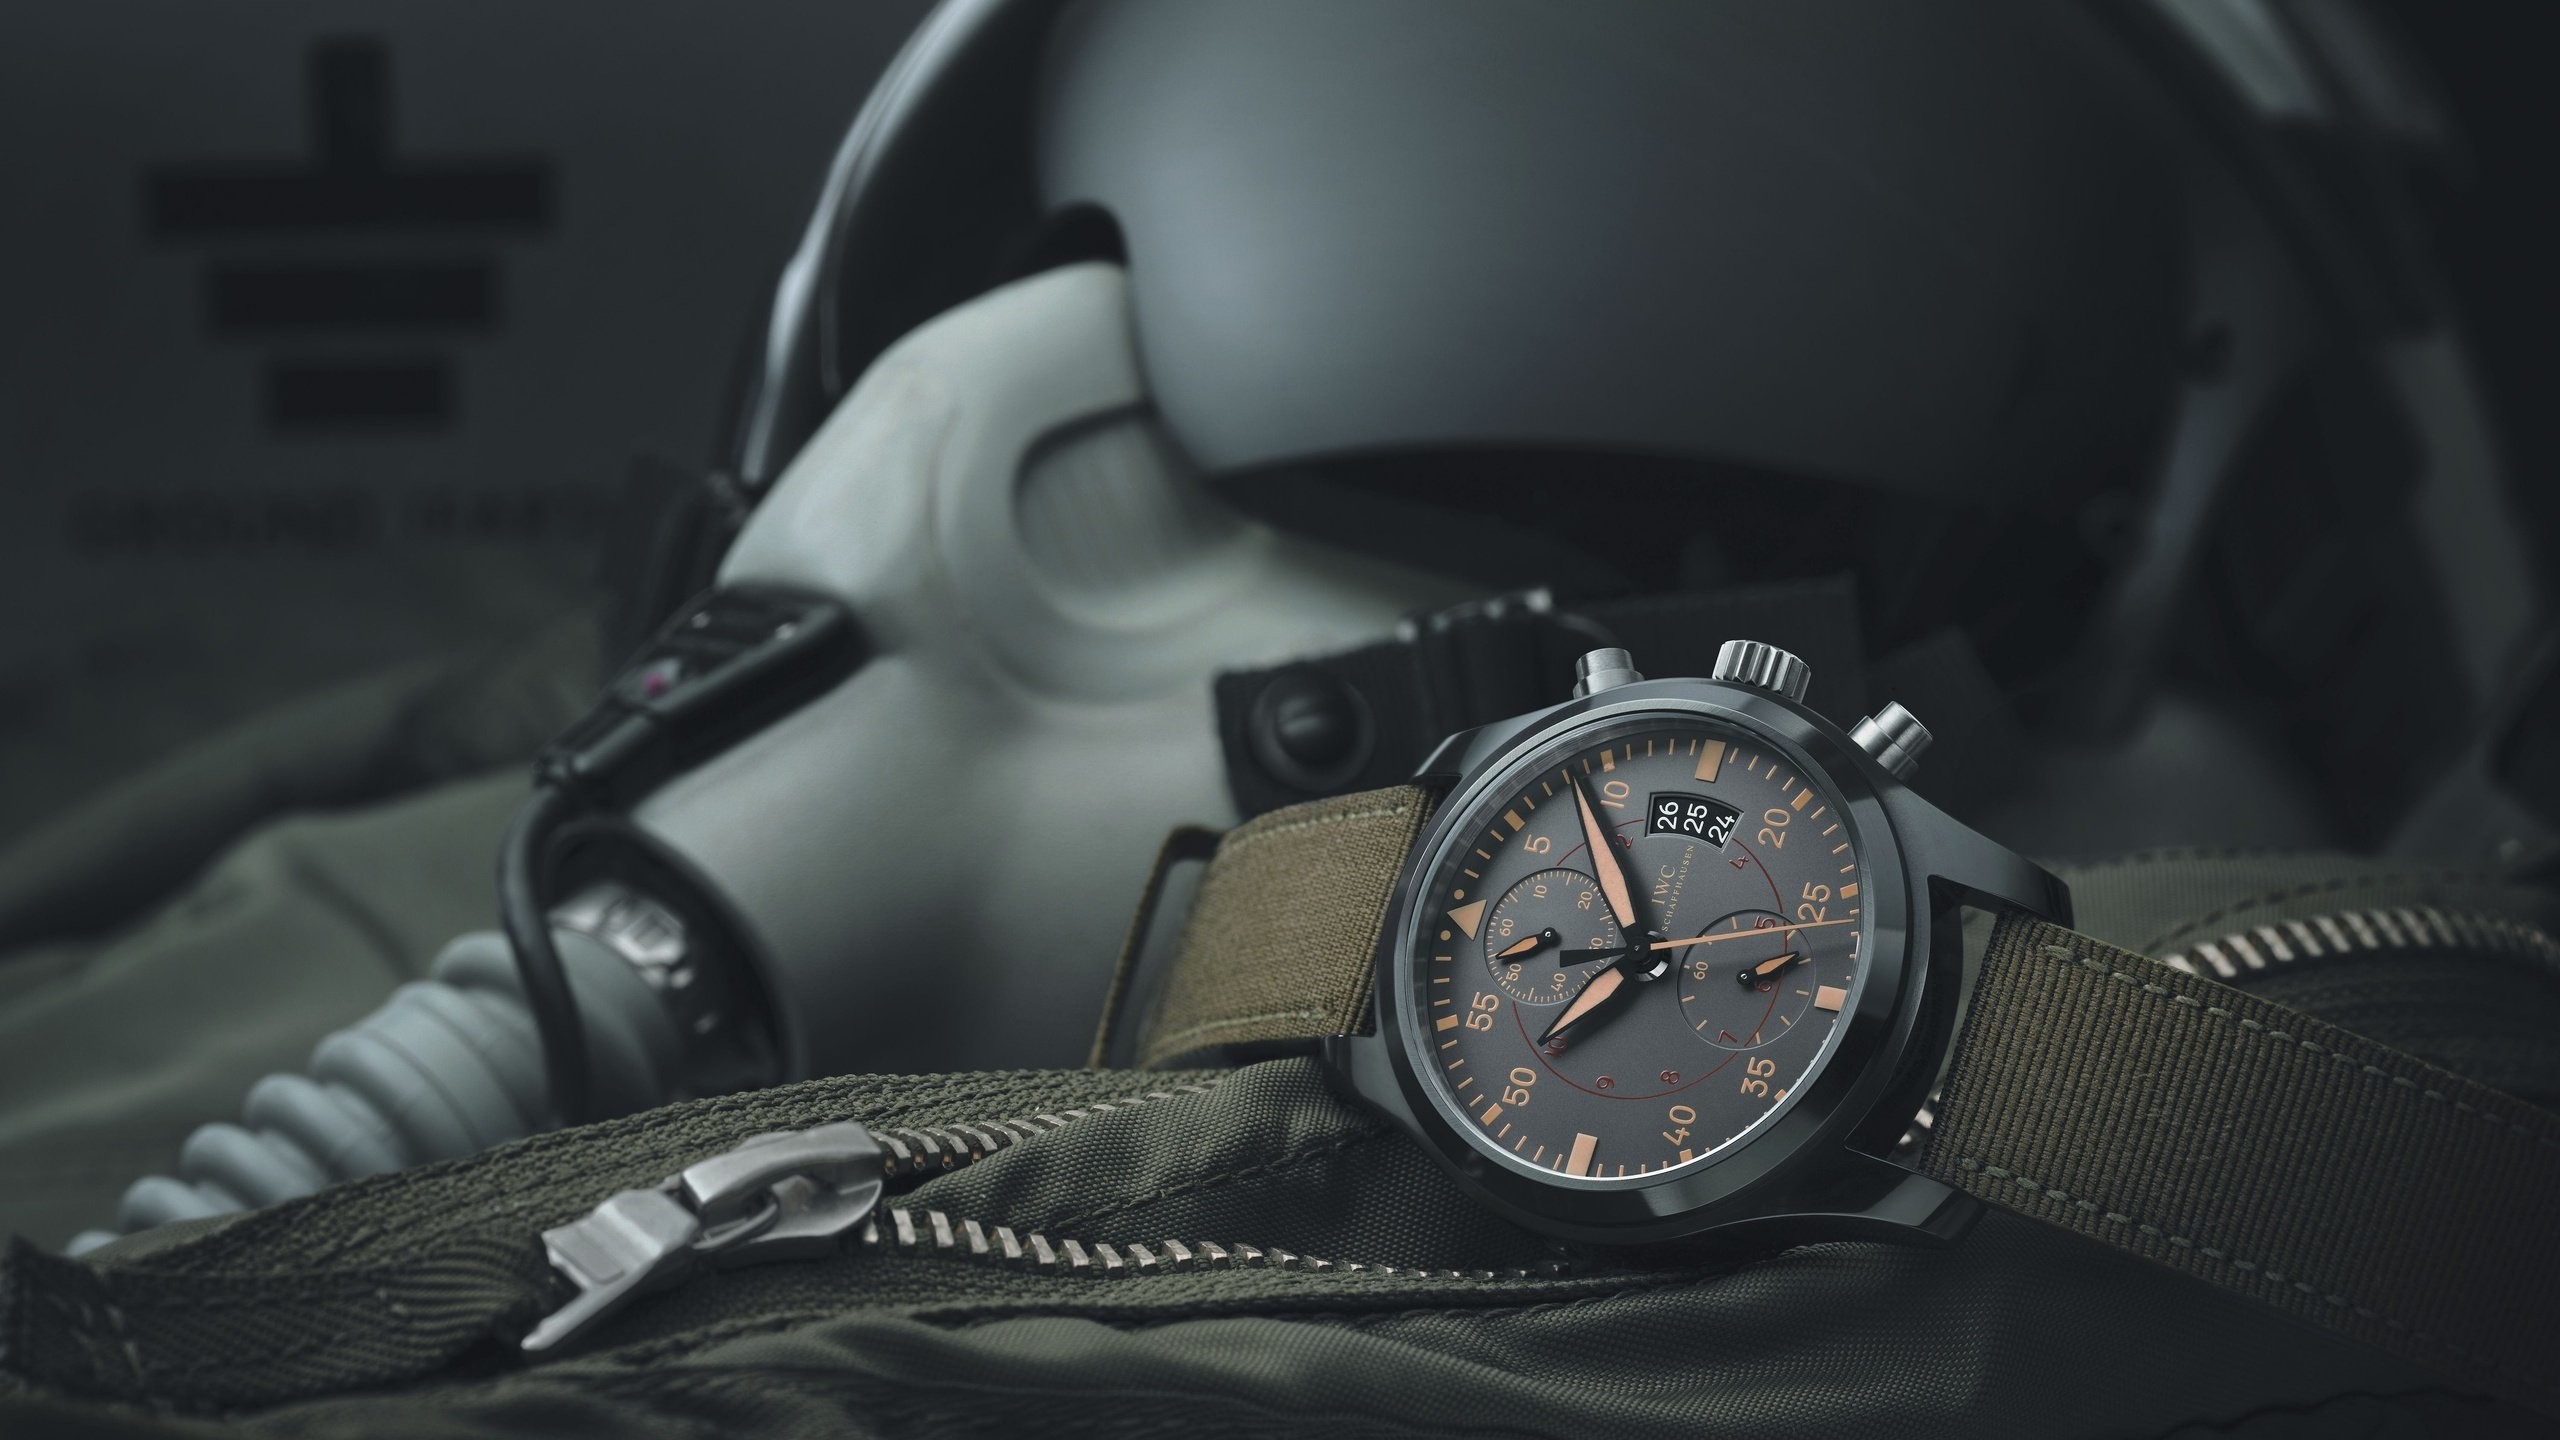 2560x1440 Clock mask air aviation watch wallpaper |  | 438398 | WallpaperUP